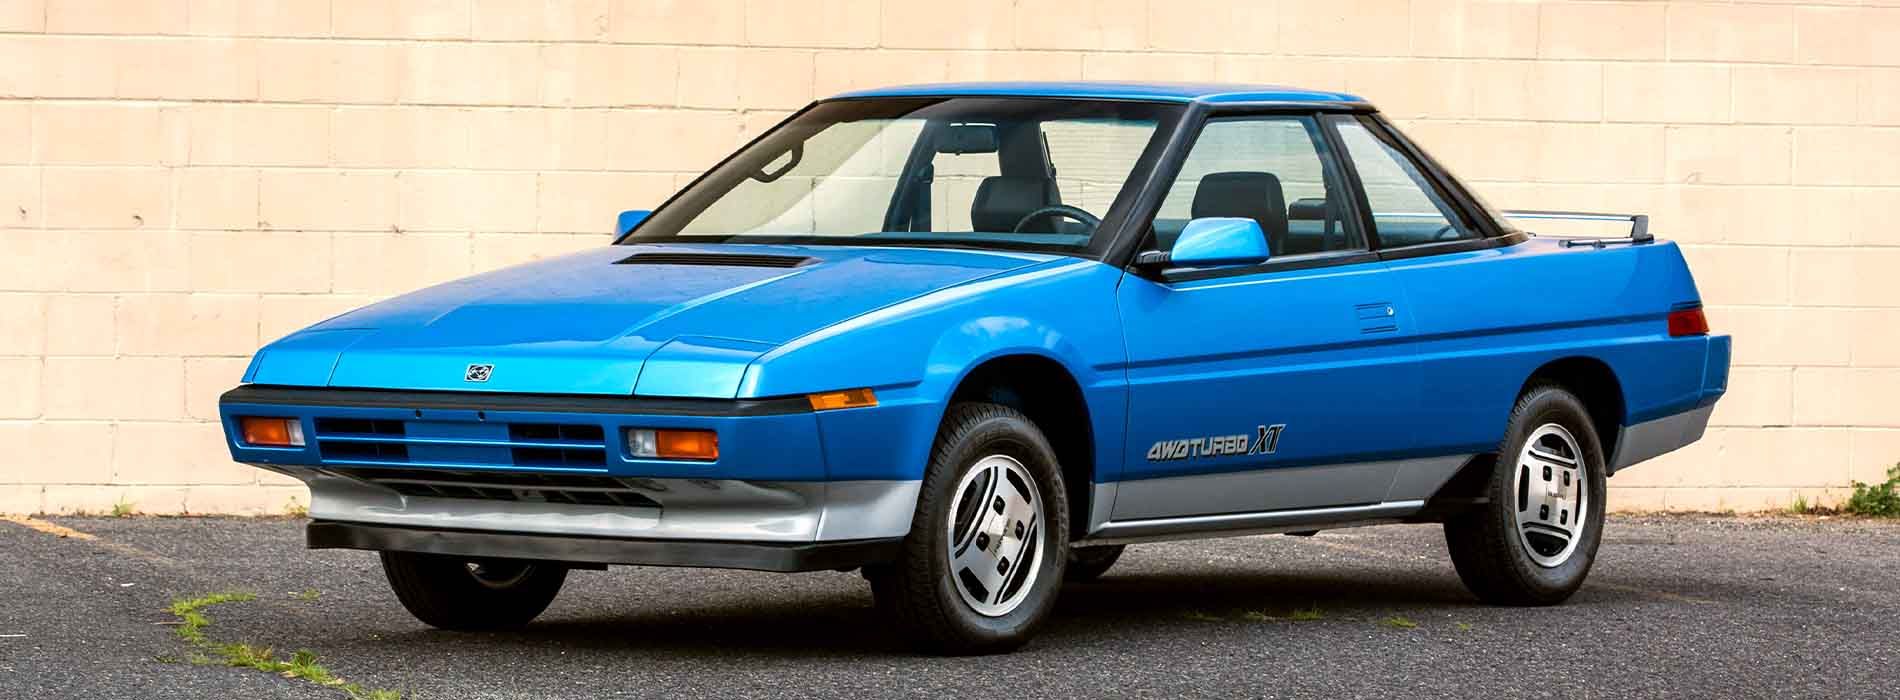 Subaru XT Coupe Front View Blue